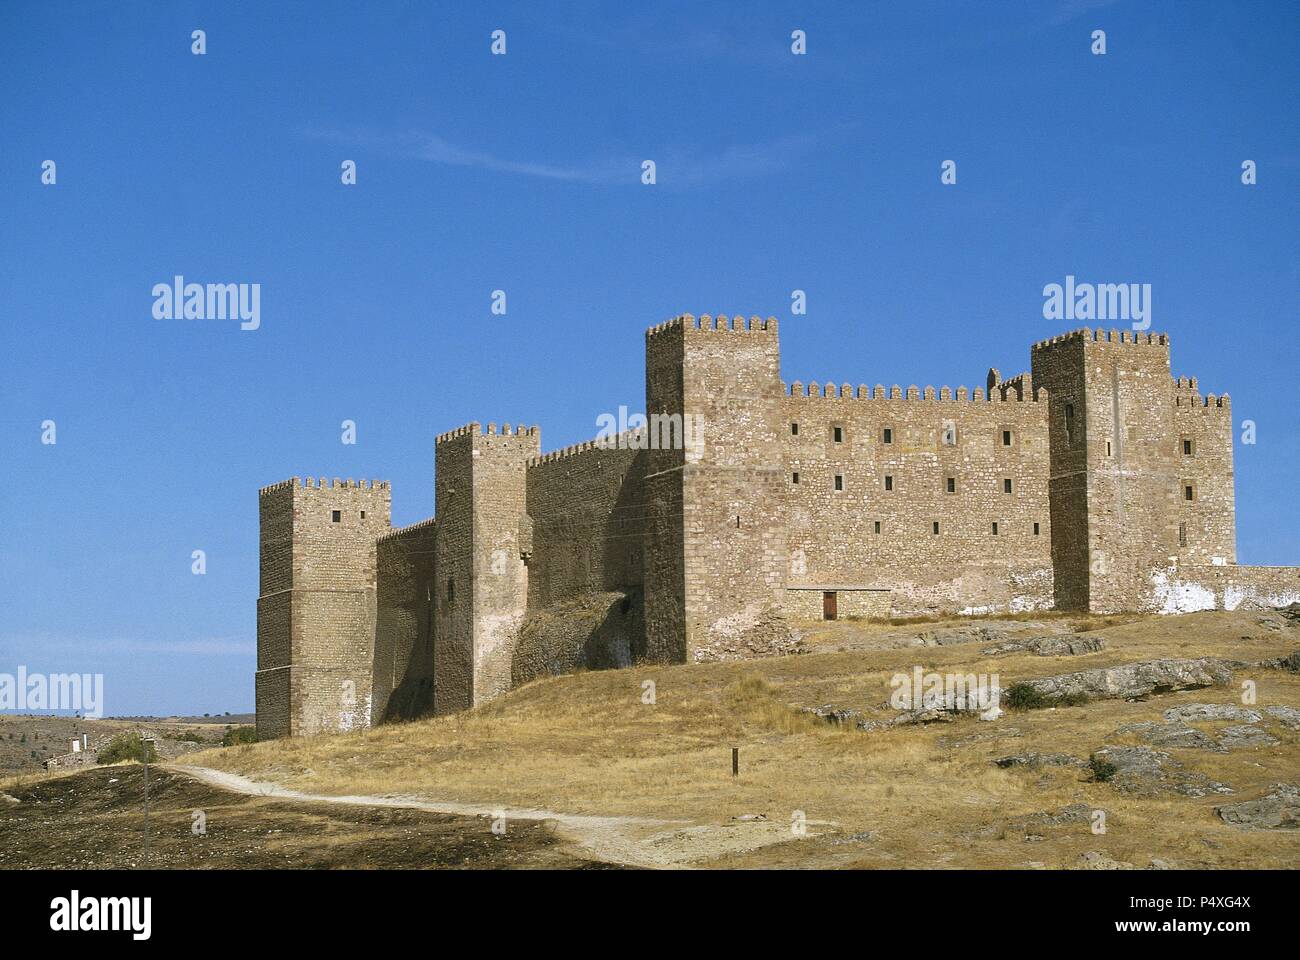 A SIGUENZA. Castello costruito dagli arabi nel XII secolo. Ora è una locanda del turismo. Provincia di Guadalajara. Castilla la Mancha. Spagna. Foto Stock